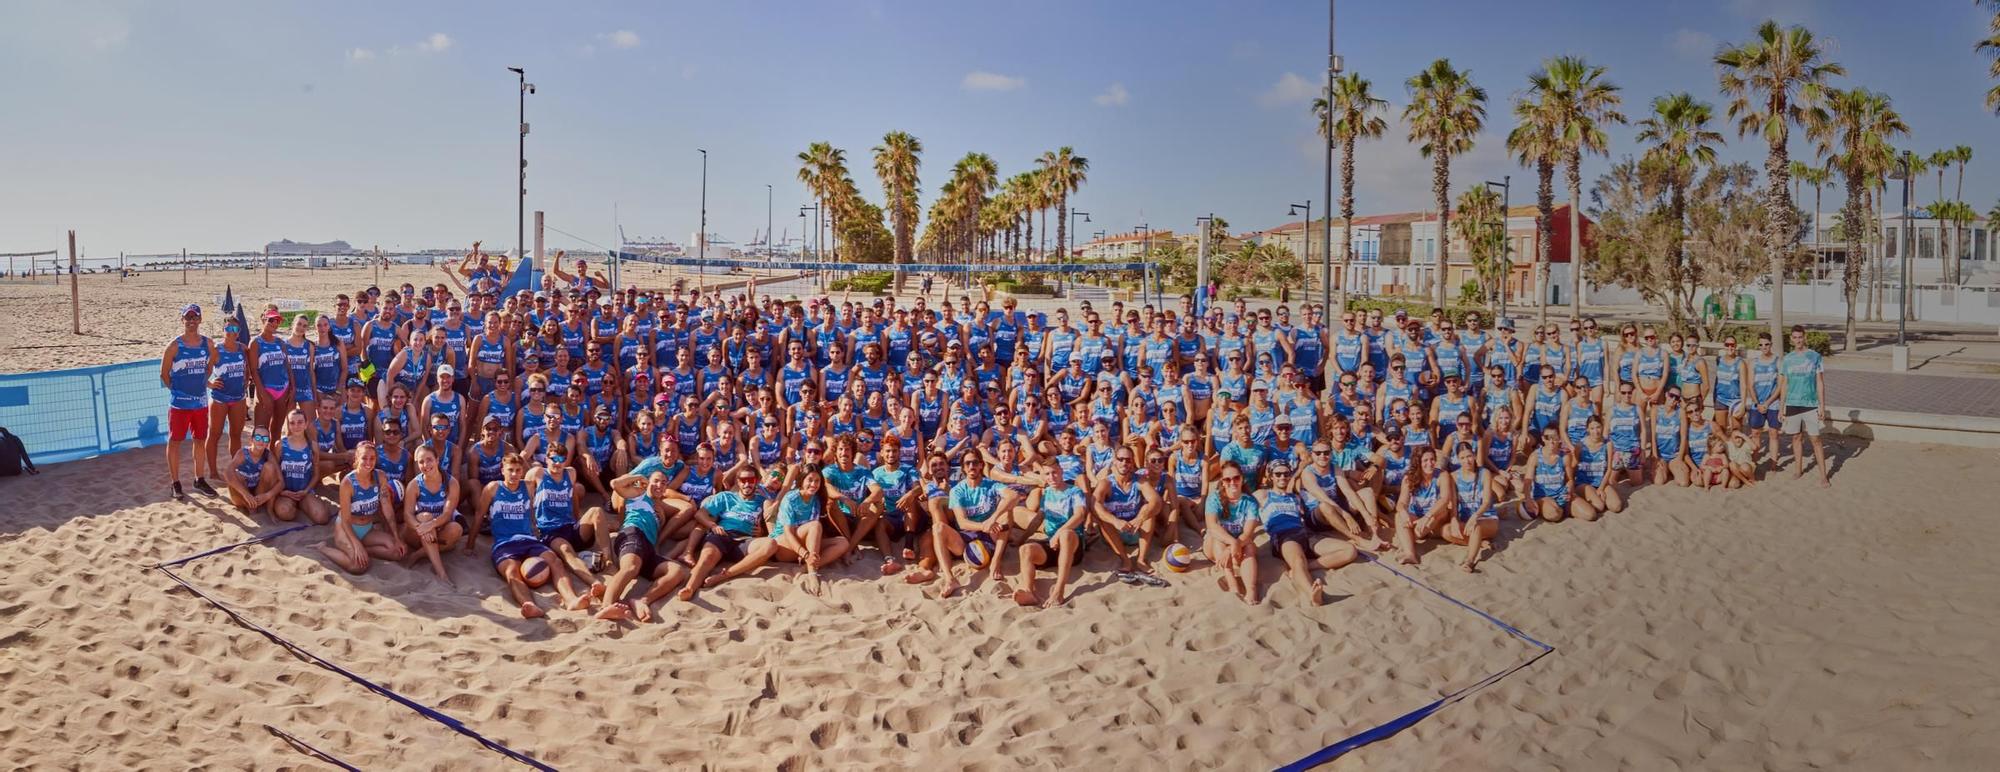 El BeachBol despide la temporada de verano con unas cifras impresionantes tras un exitoso verano en el que participaron más de 118.000 jugadores y jugadoras entre alumnos, participantes en sus torneos y usuarios que utilizaron las instalaciones de uso libre.